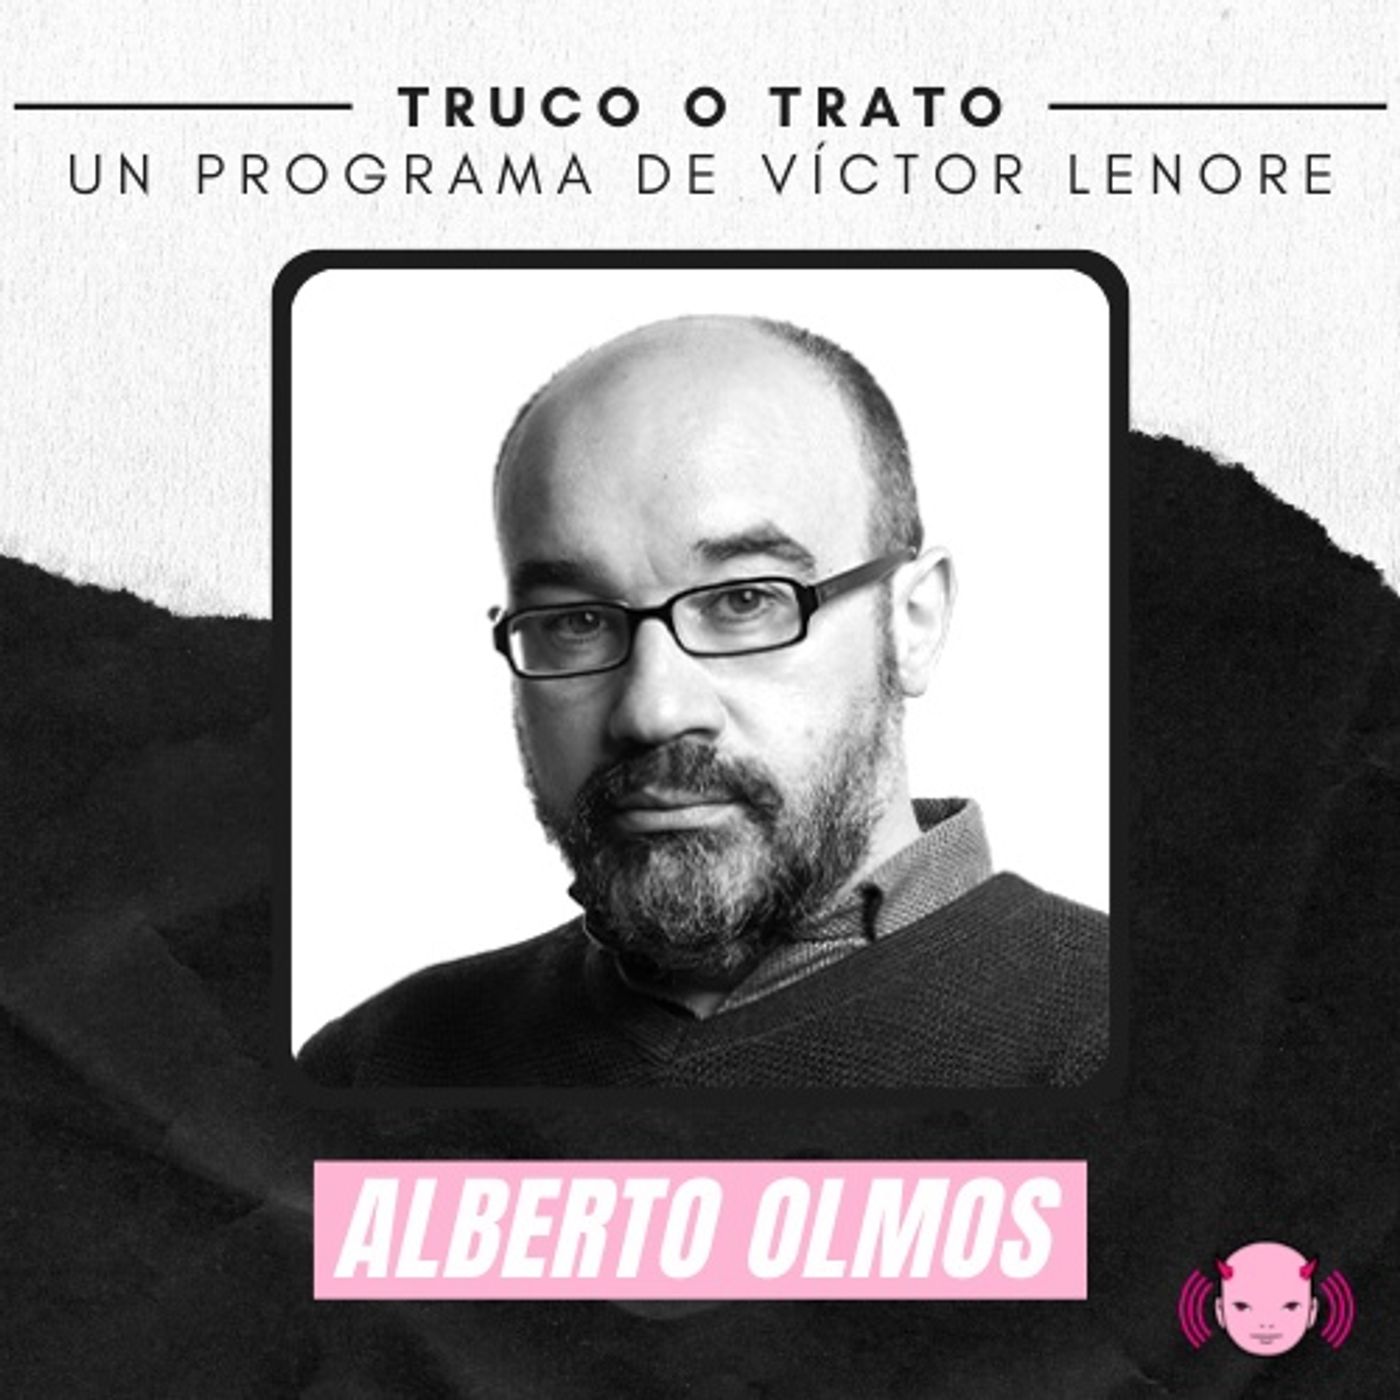 Truco o trato con Víctor Lenore #1: Alberto Olmos